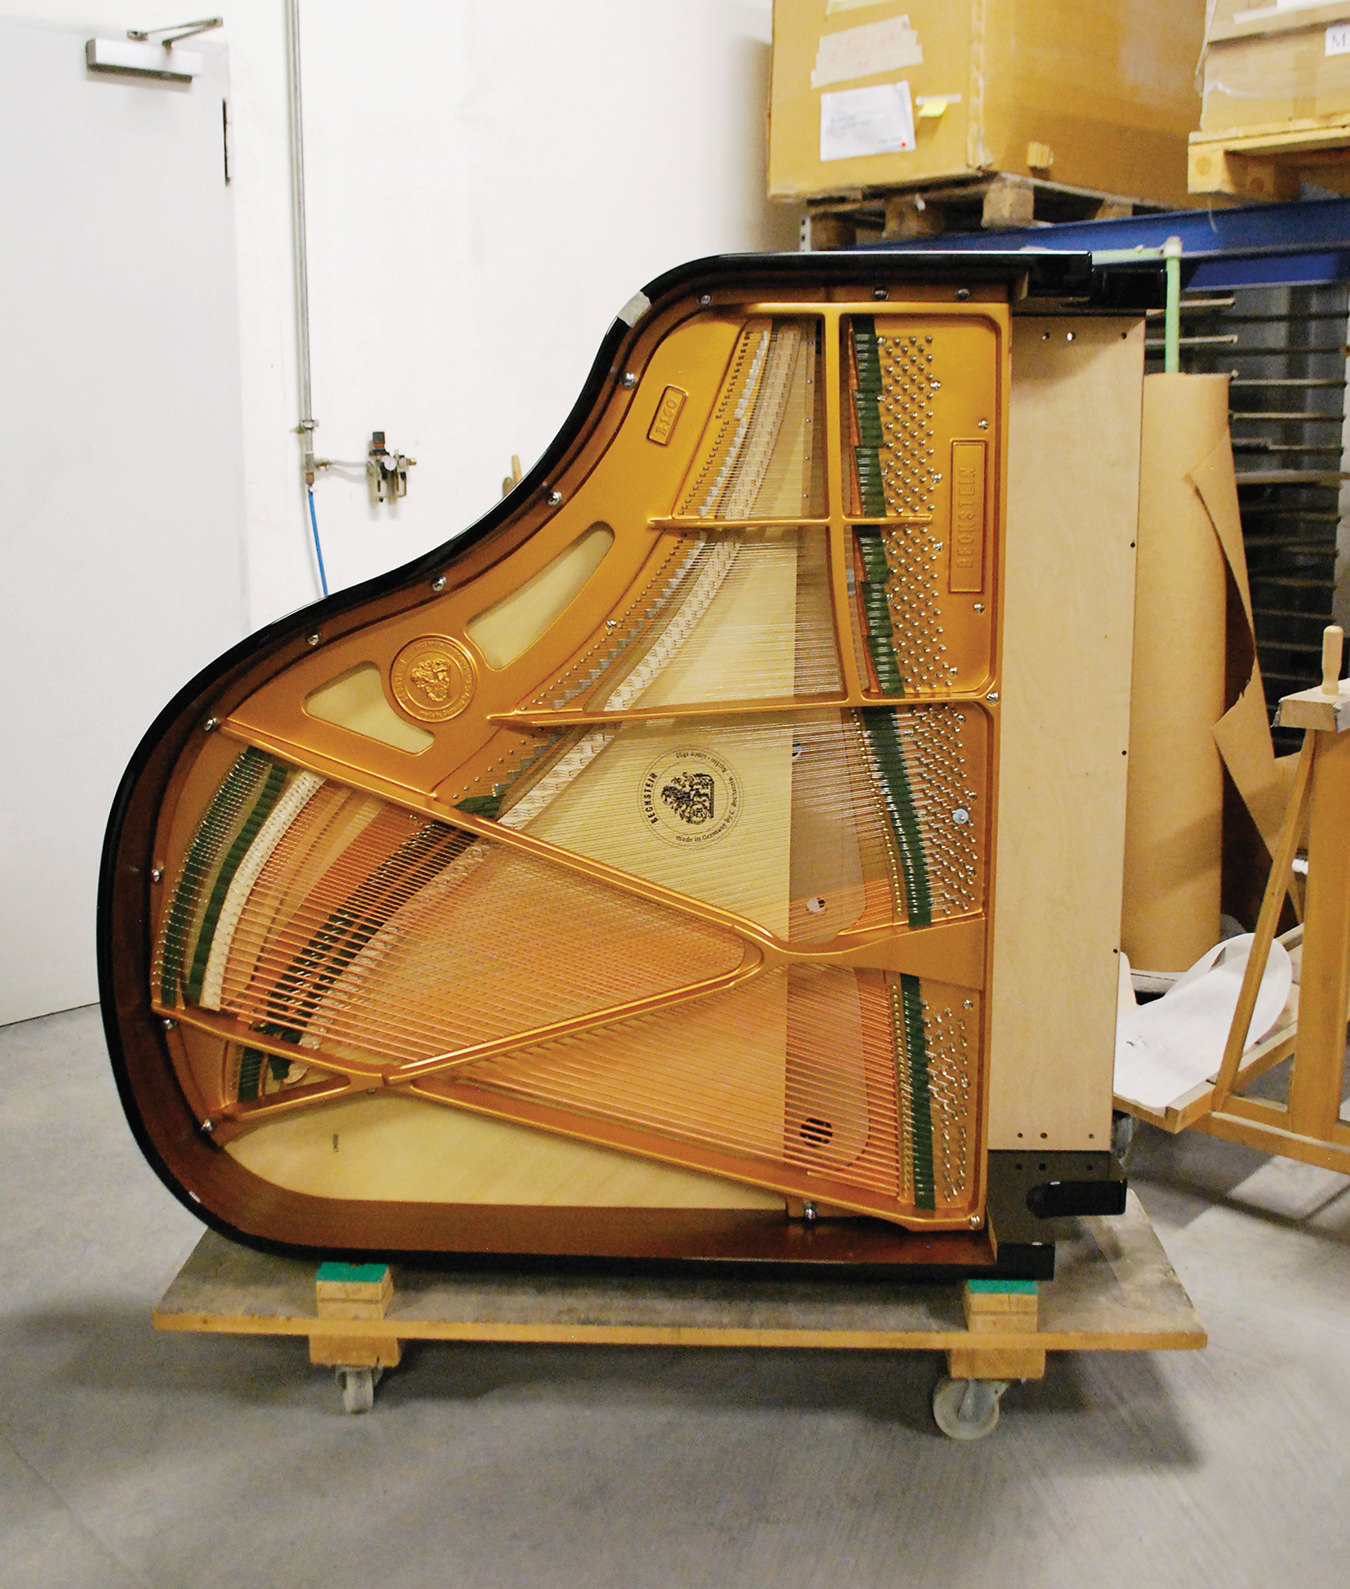 NUVO Magazine Spring 2015: C. Bechstein Pianos